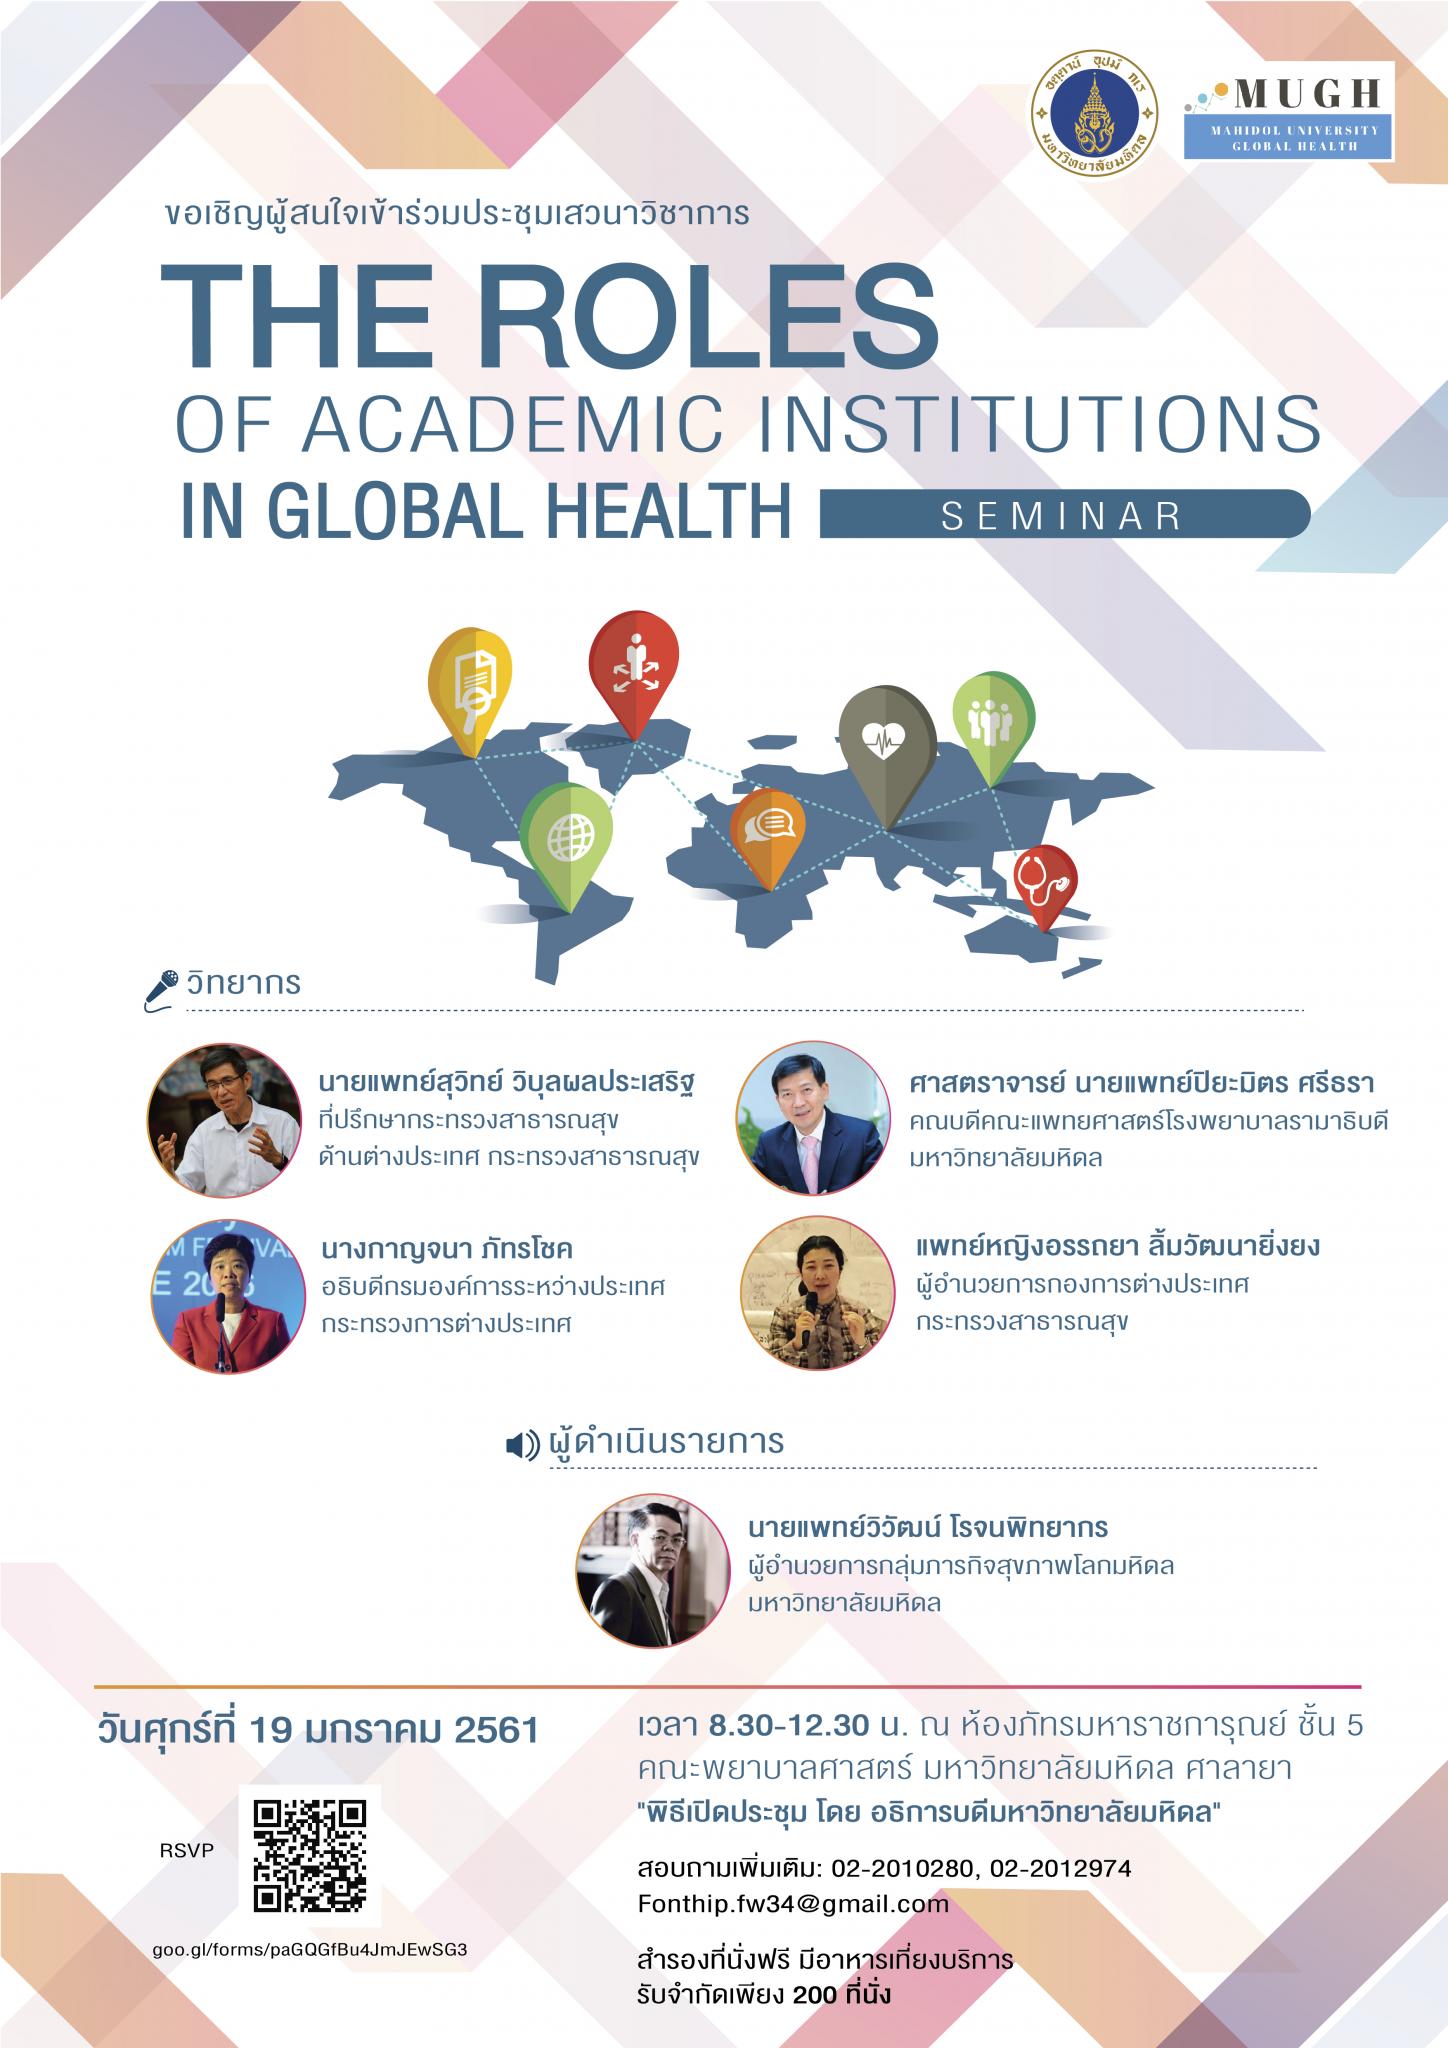 ขอเชิญผู้สนใจเข้าร่วมประชุมงานเสวนาวิชาการ หัวข้อ The Roles of Academic Institutions in Global Health